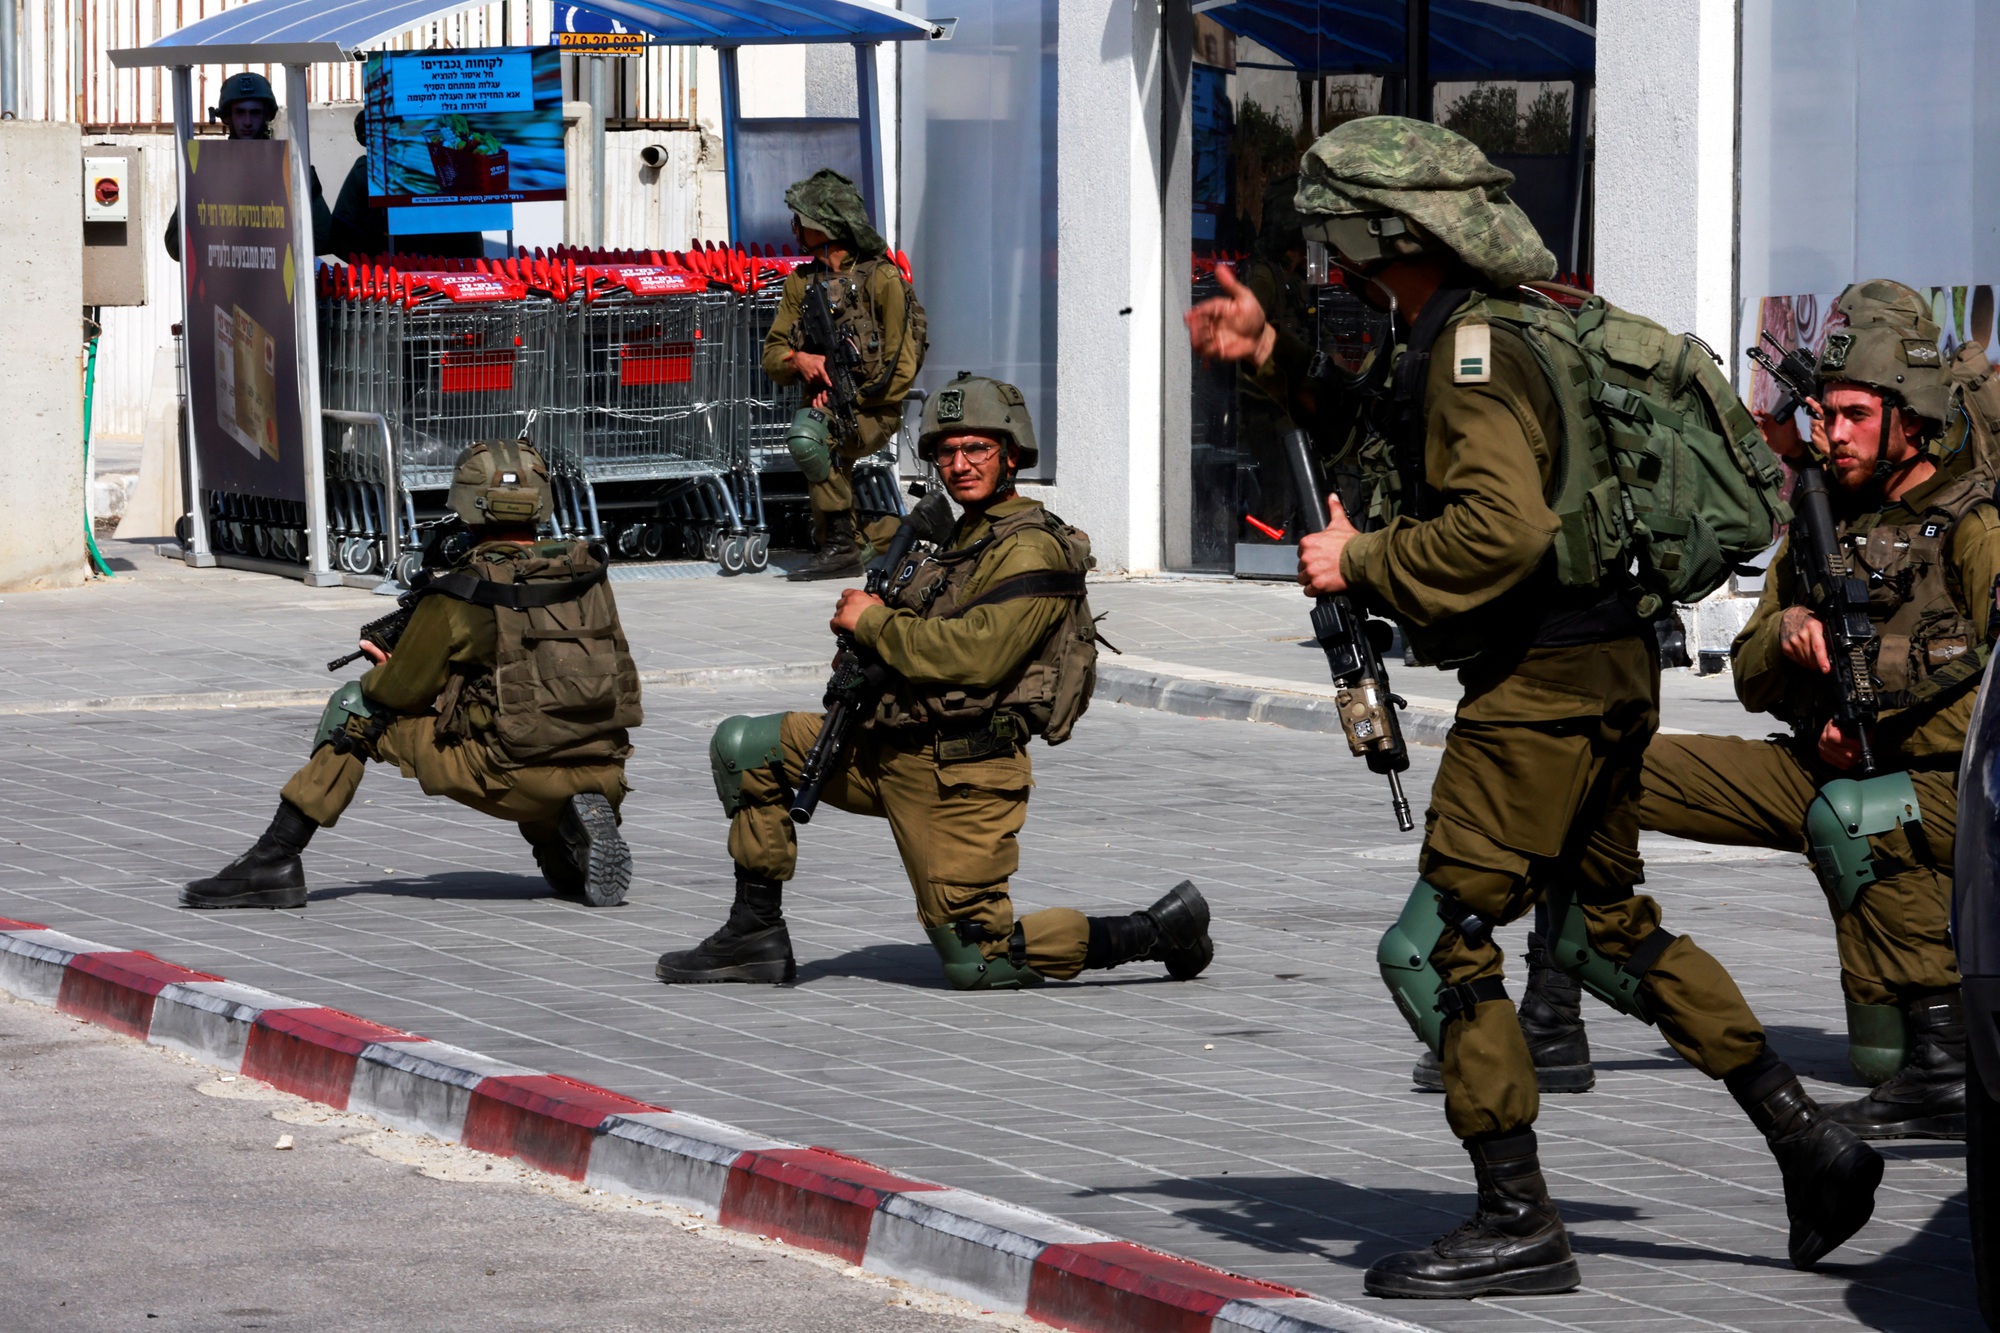 Nhóm vũ trang Hamas khét tiếng như thế nào, lấy vũ khí từ đâu để liều mạng tấn công Israel? - Ảnh 2.